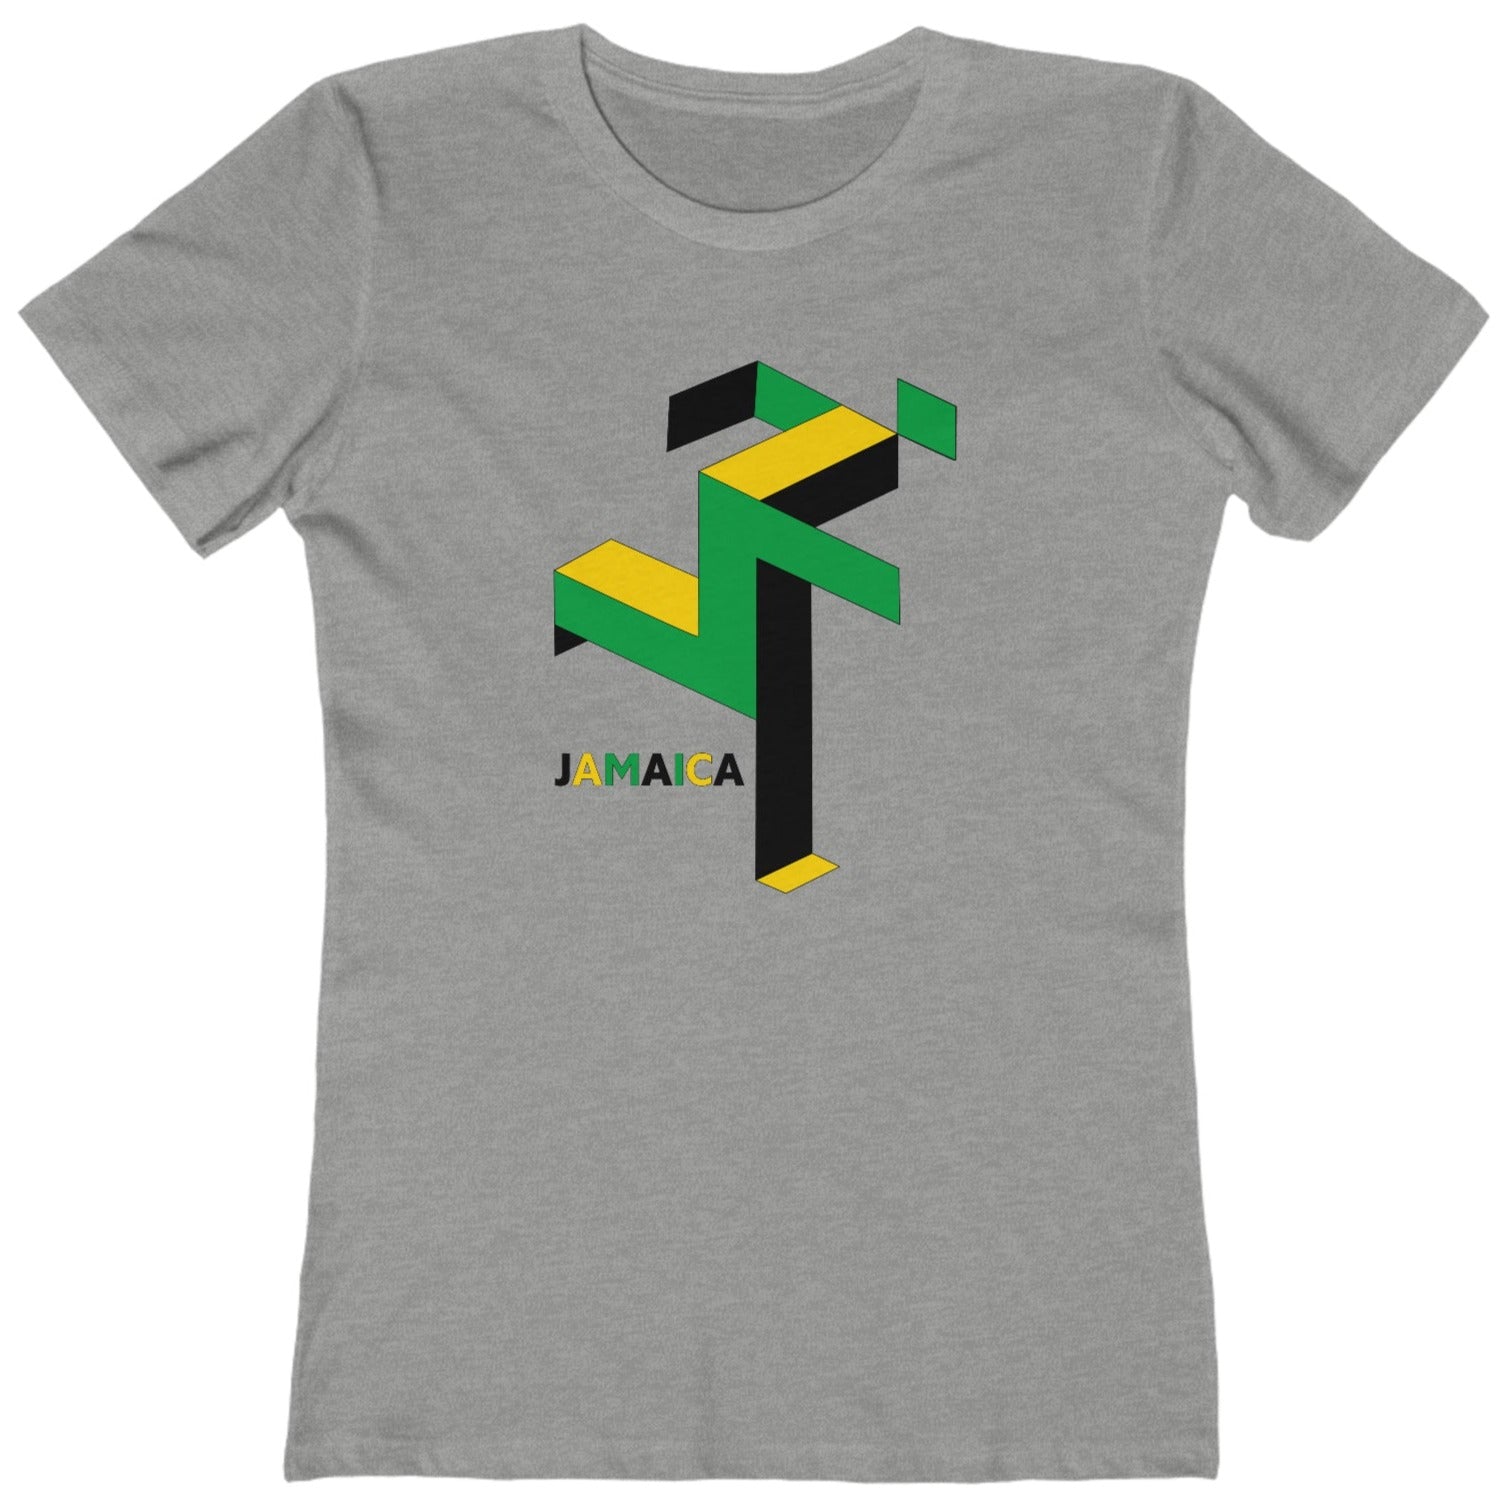 Jamaica Runner Olympics t shirt